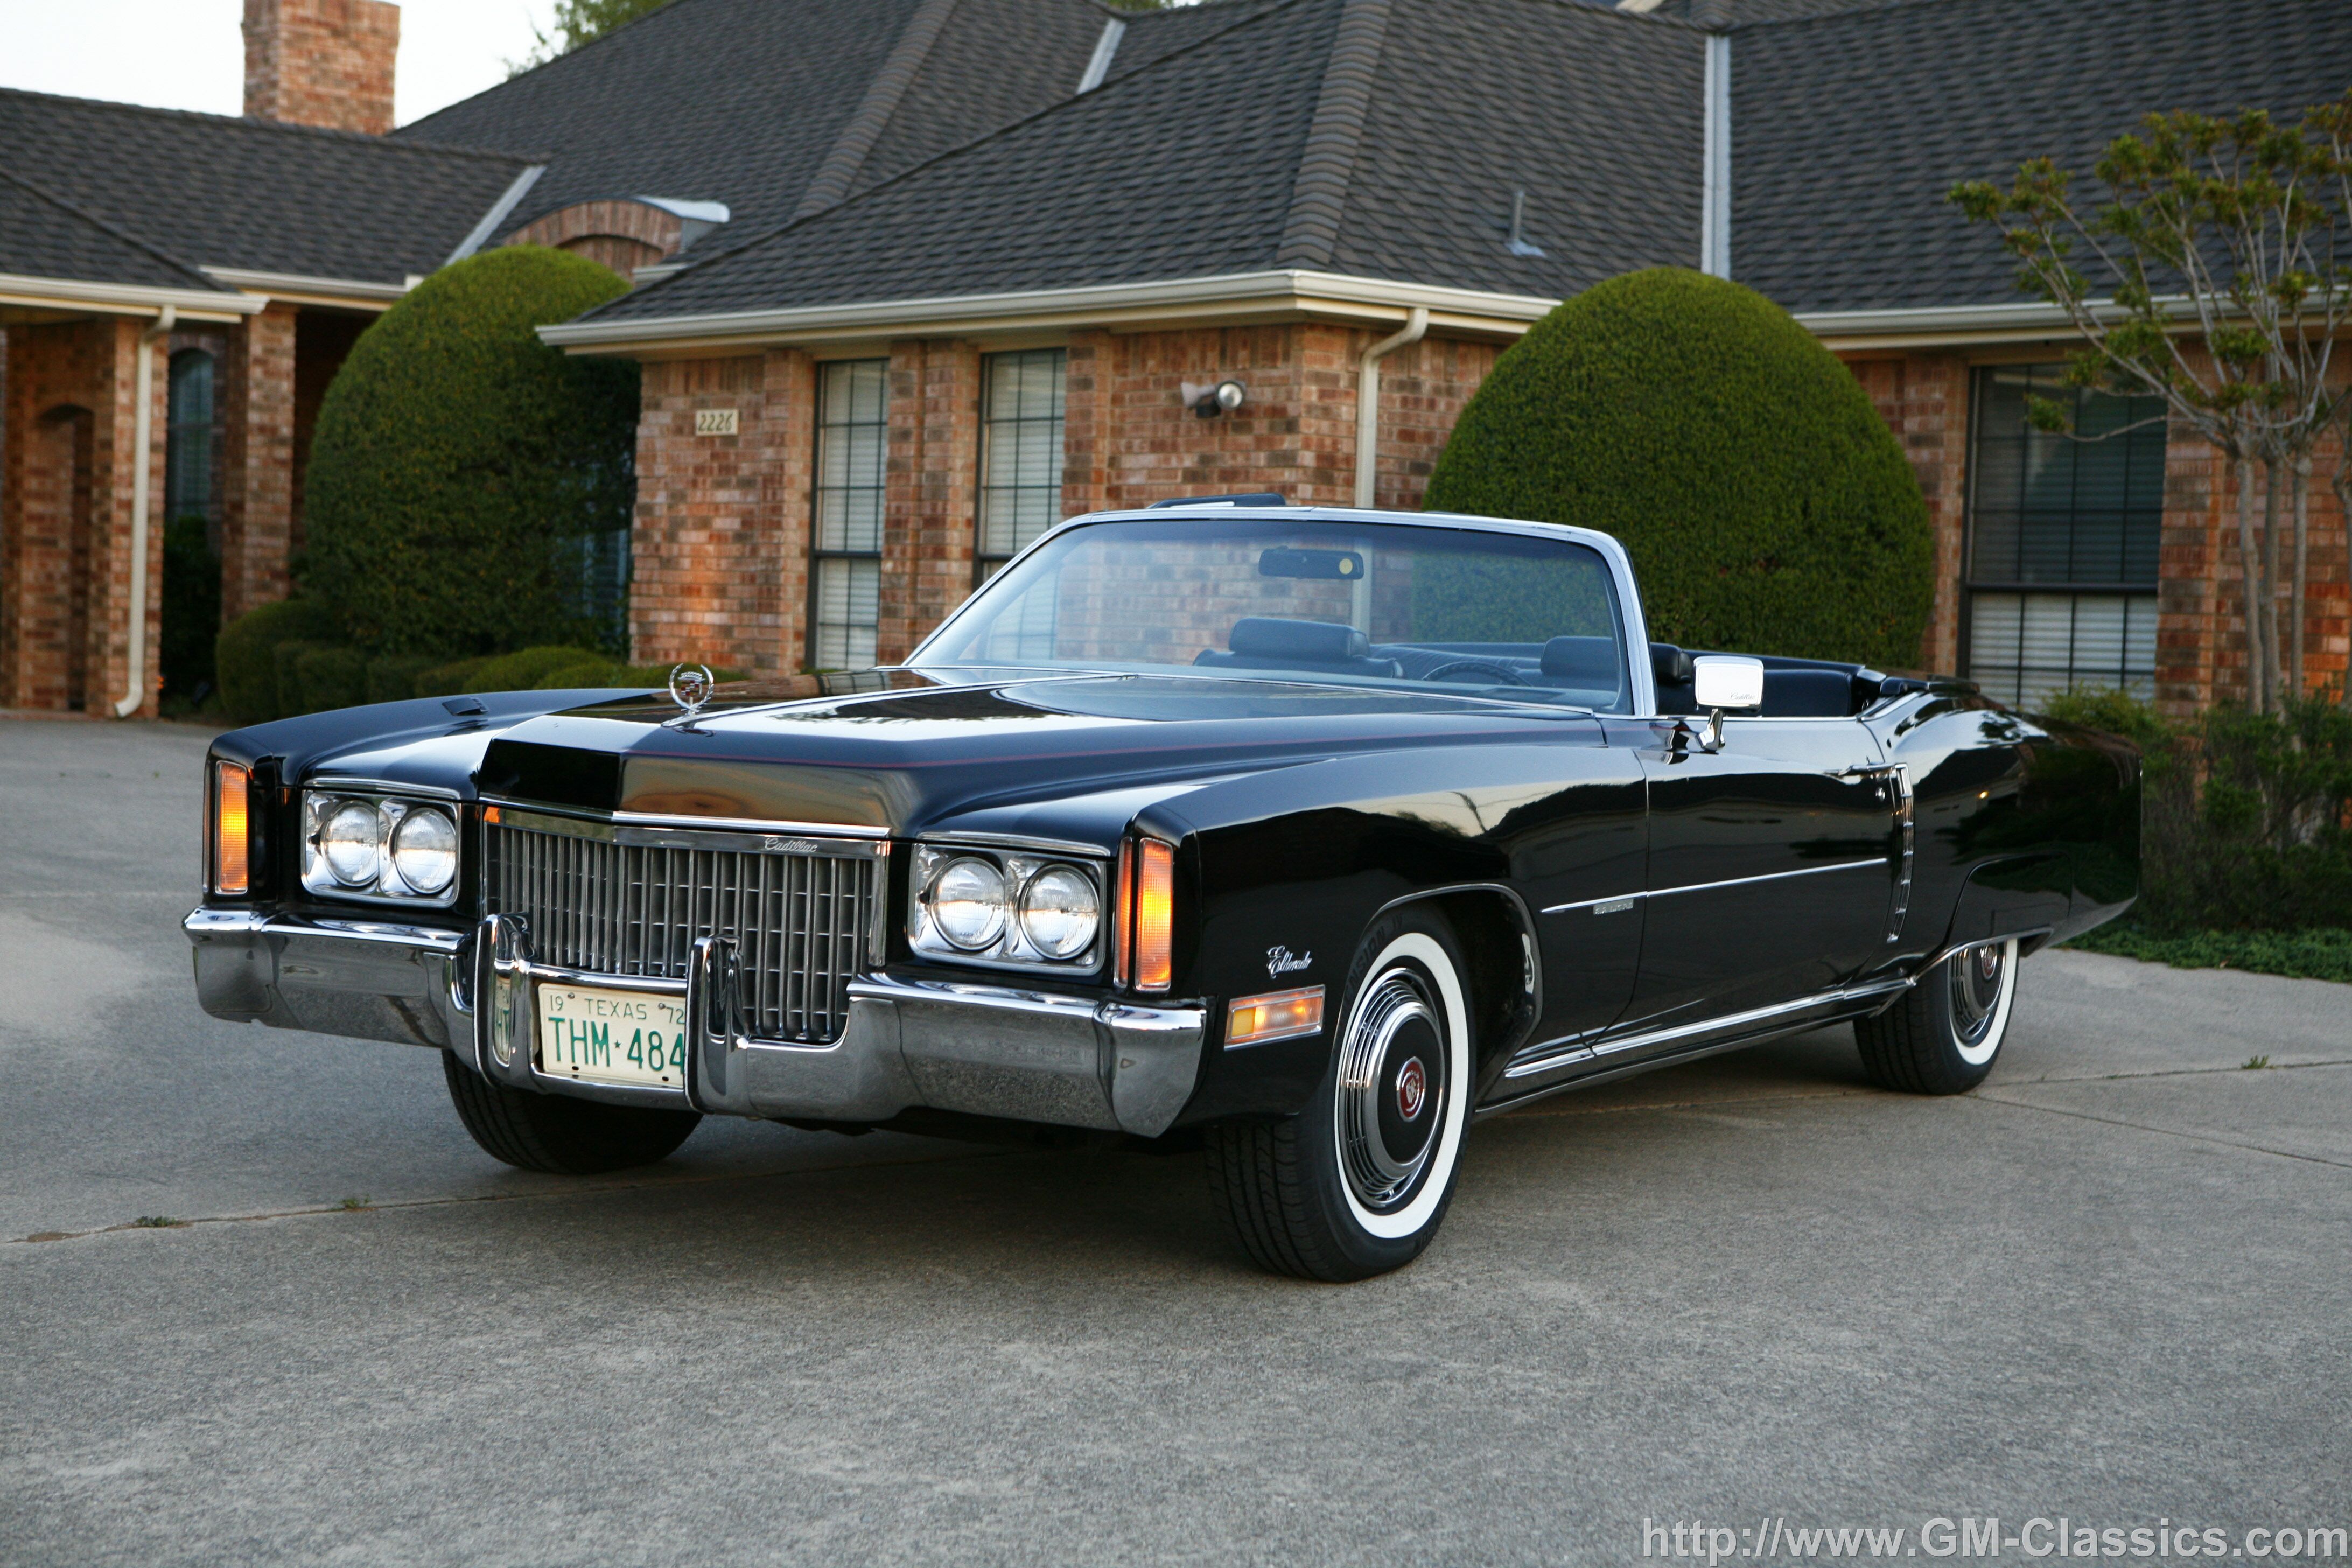 1 американская машина. Cadillac Eldorado 1972. Cadillac Eldorado Convertible 1972. Cadillac Eldorado 1971. Cadillac Eldorado 1972г.